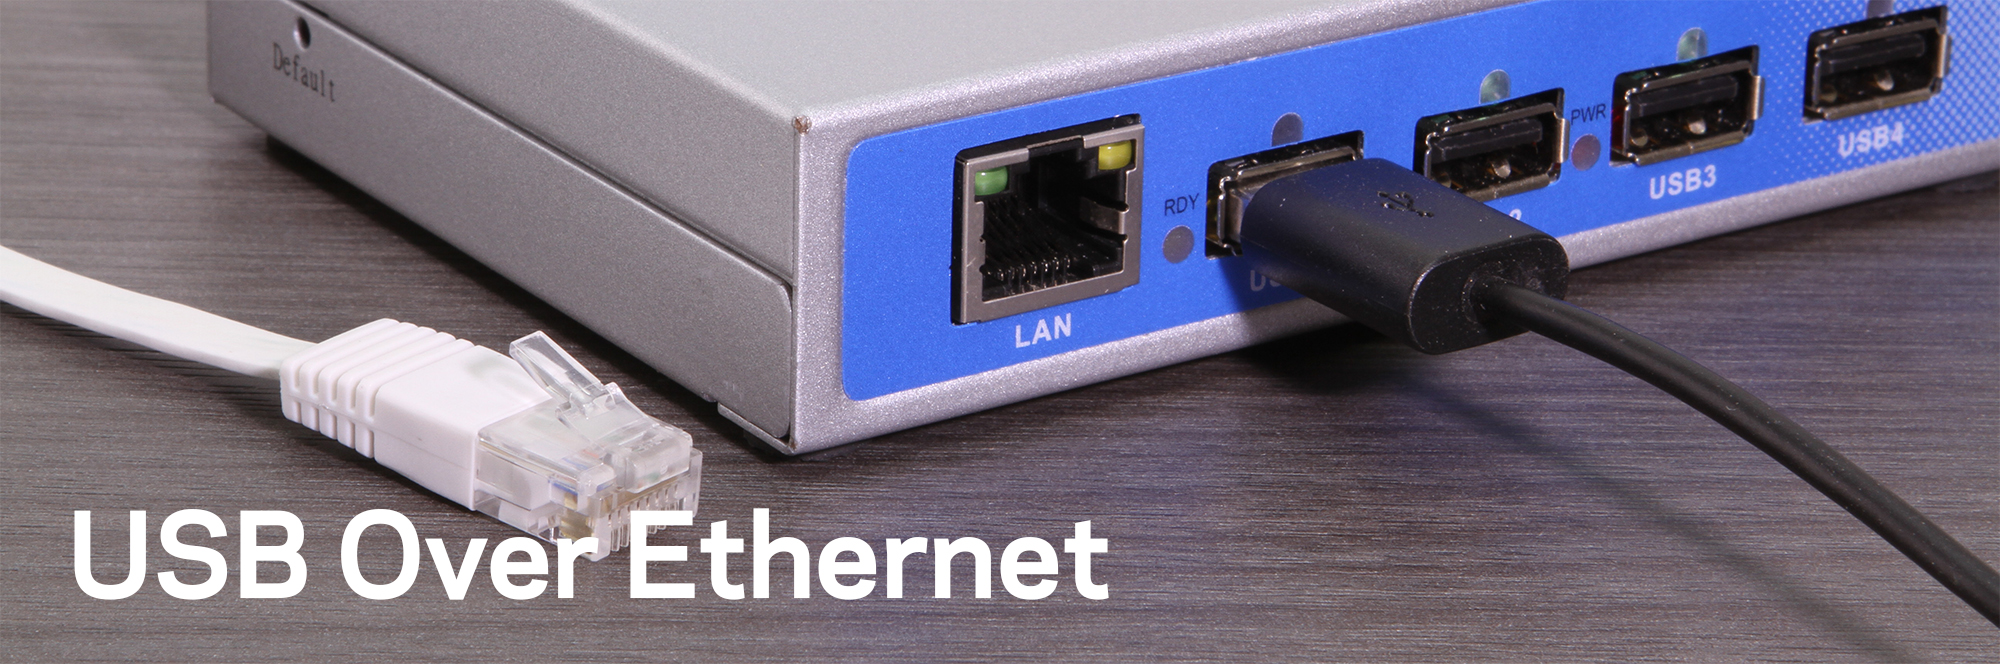 Bloodstained ordbog tjener USB Over Ethernet - Coolgear